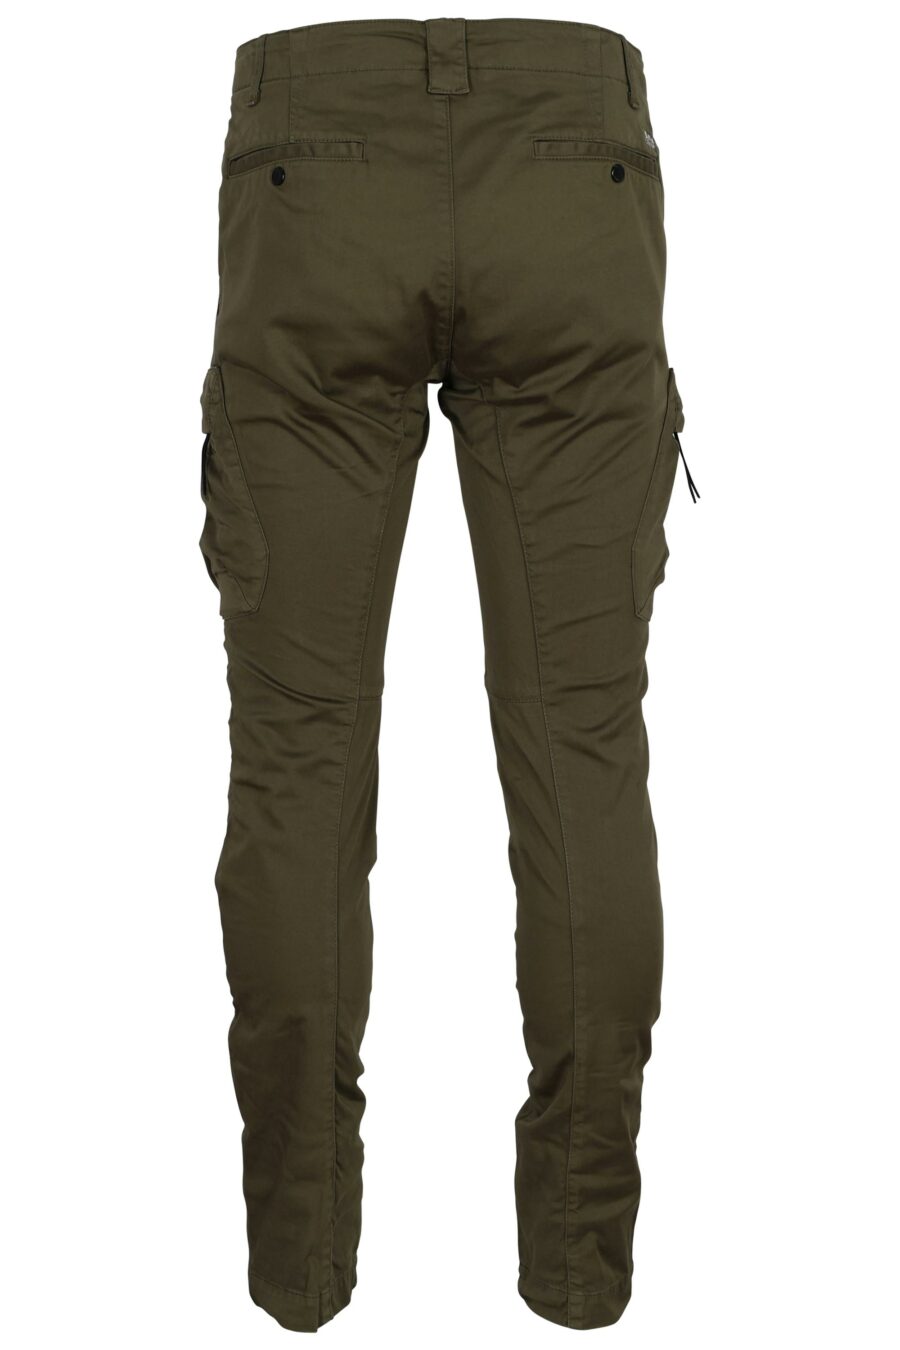 Pantalón verde militar estilo cargo con logo lente - 7620943722628 2